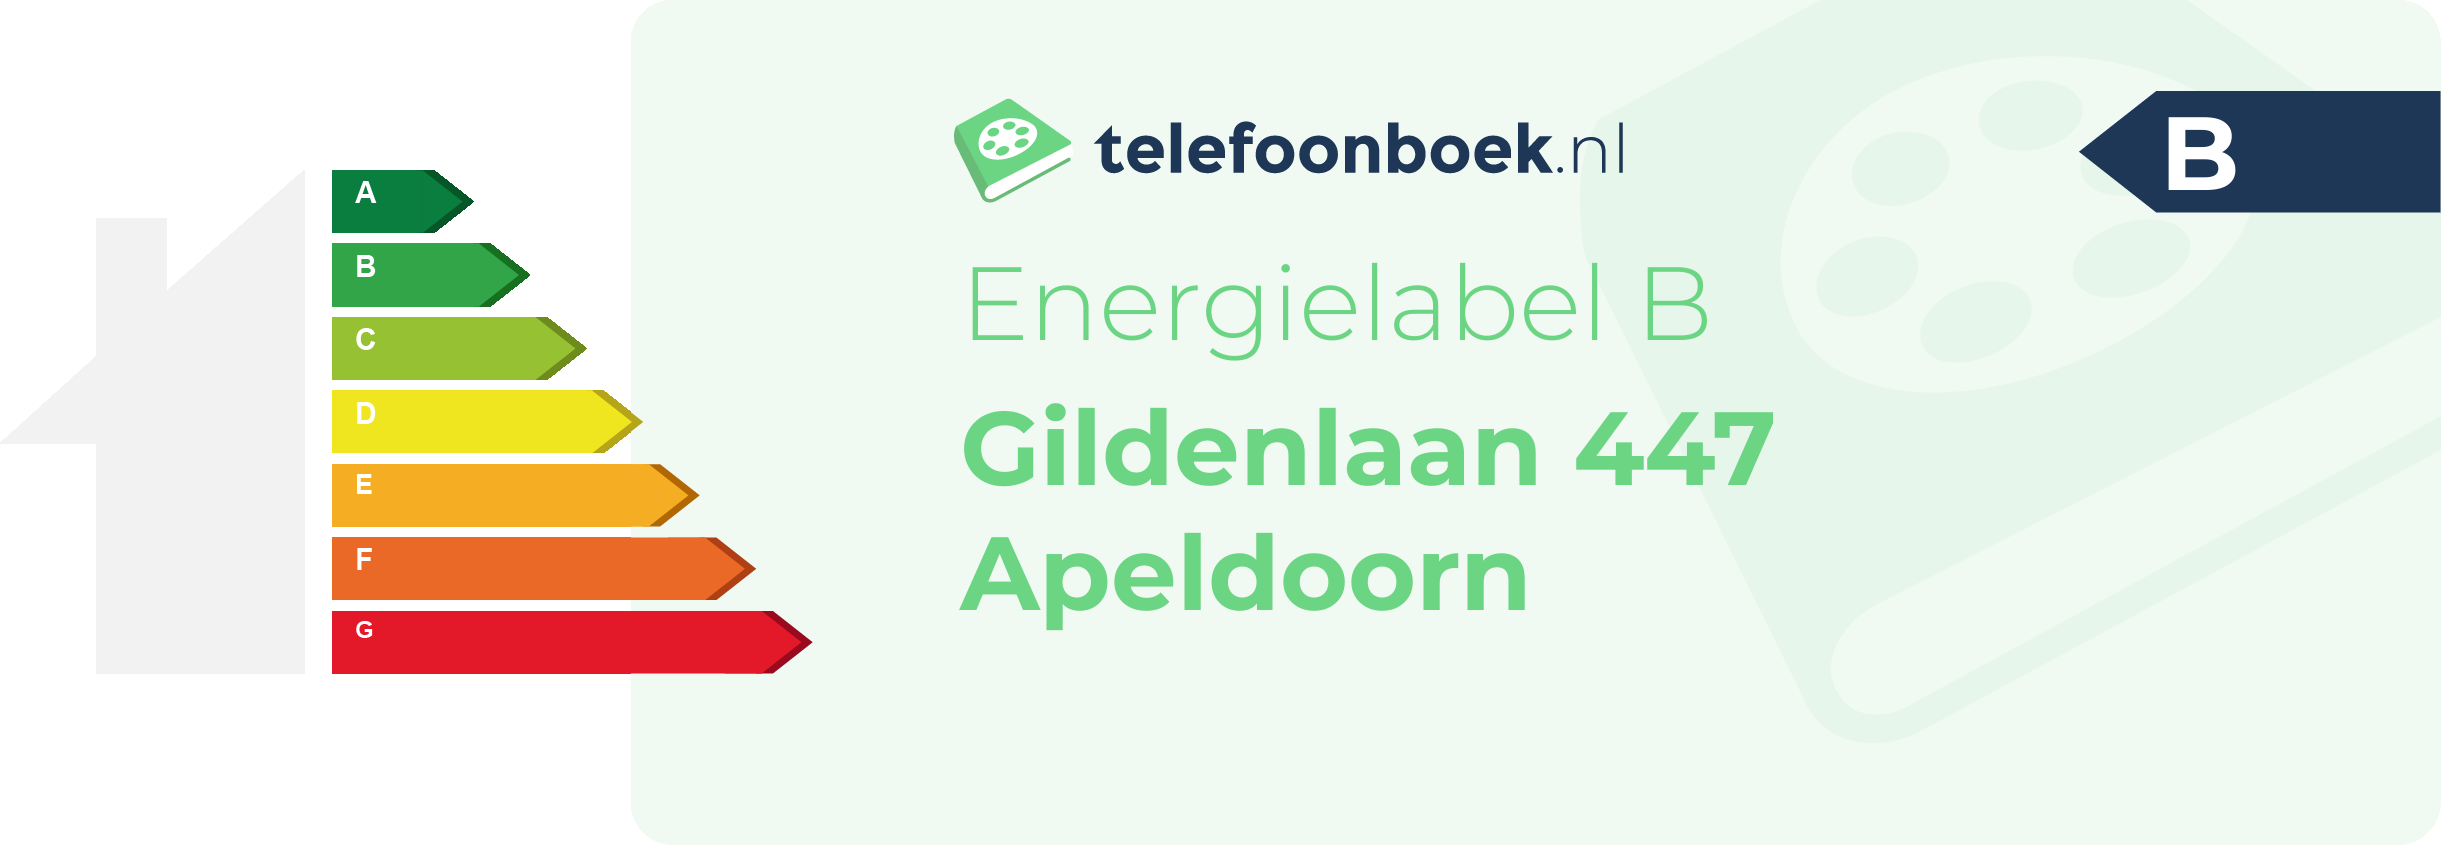 Energielabel Gildenlaan 447 Apeldoorn